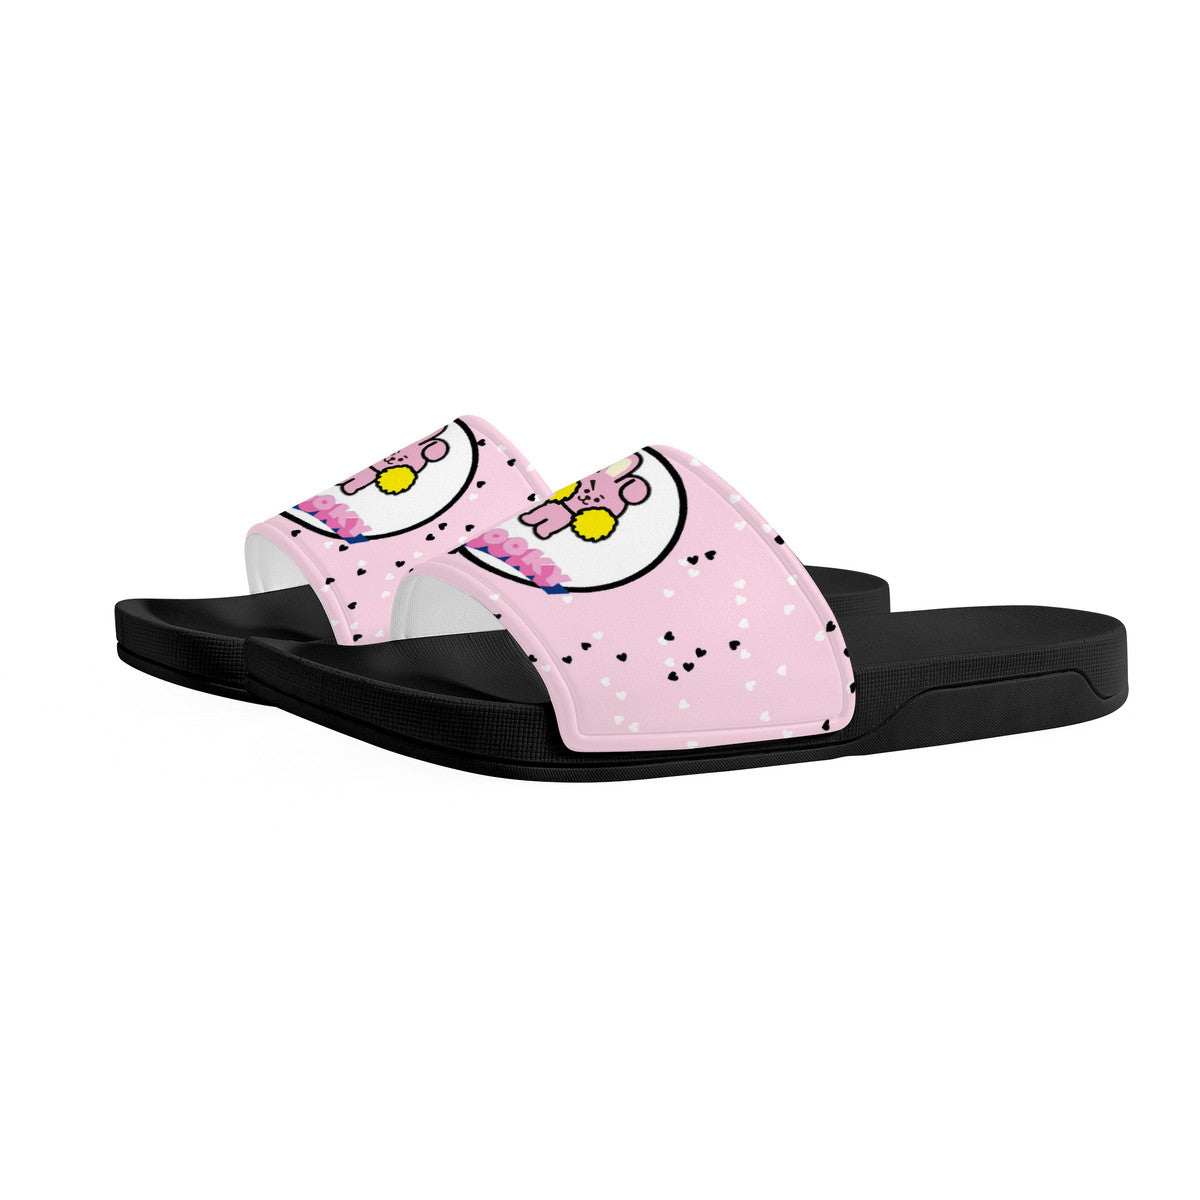 Cooky Slides - BTS JUNGKOOK Sandals